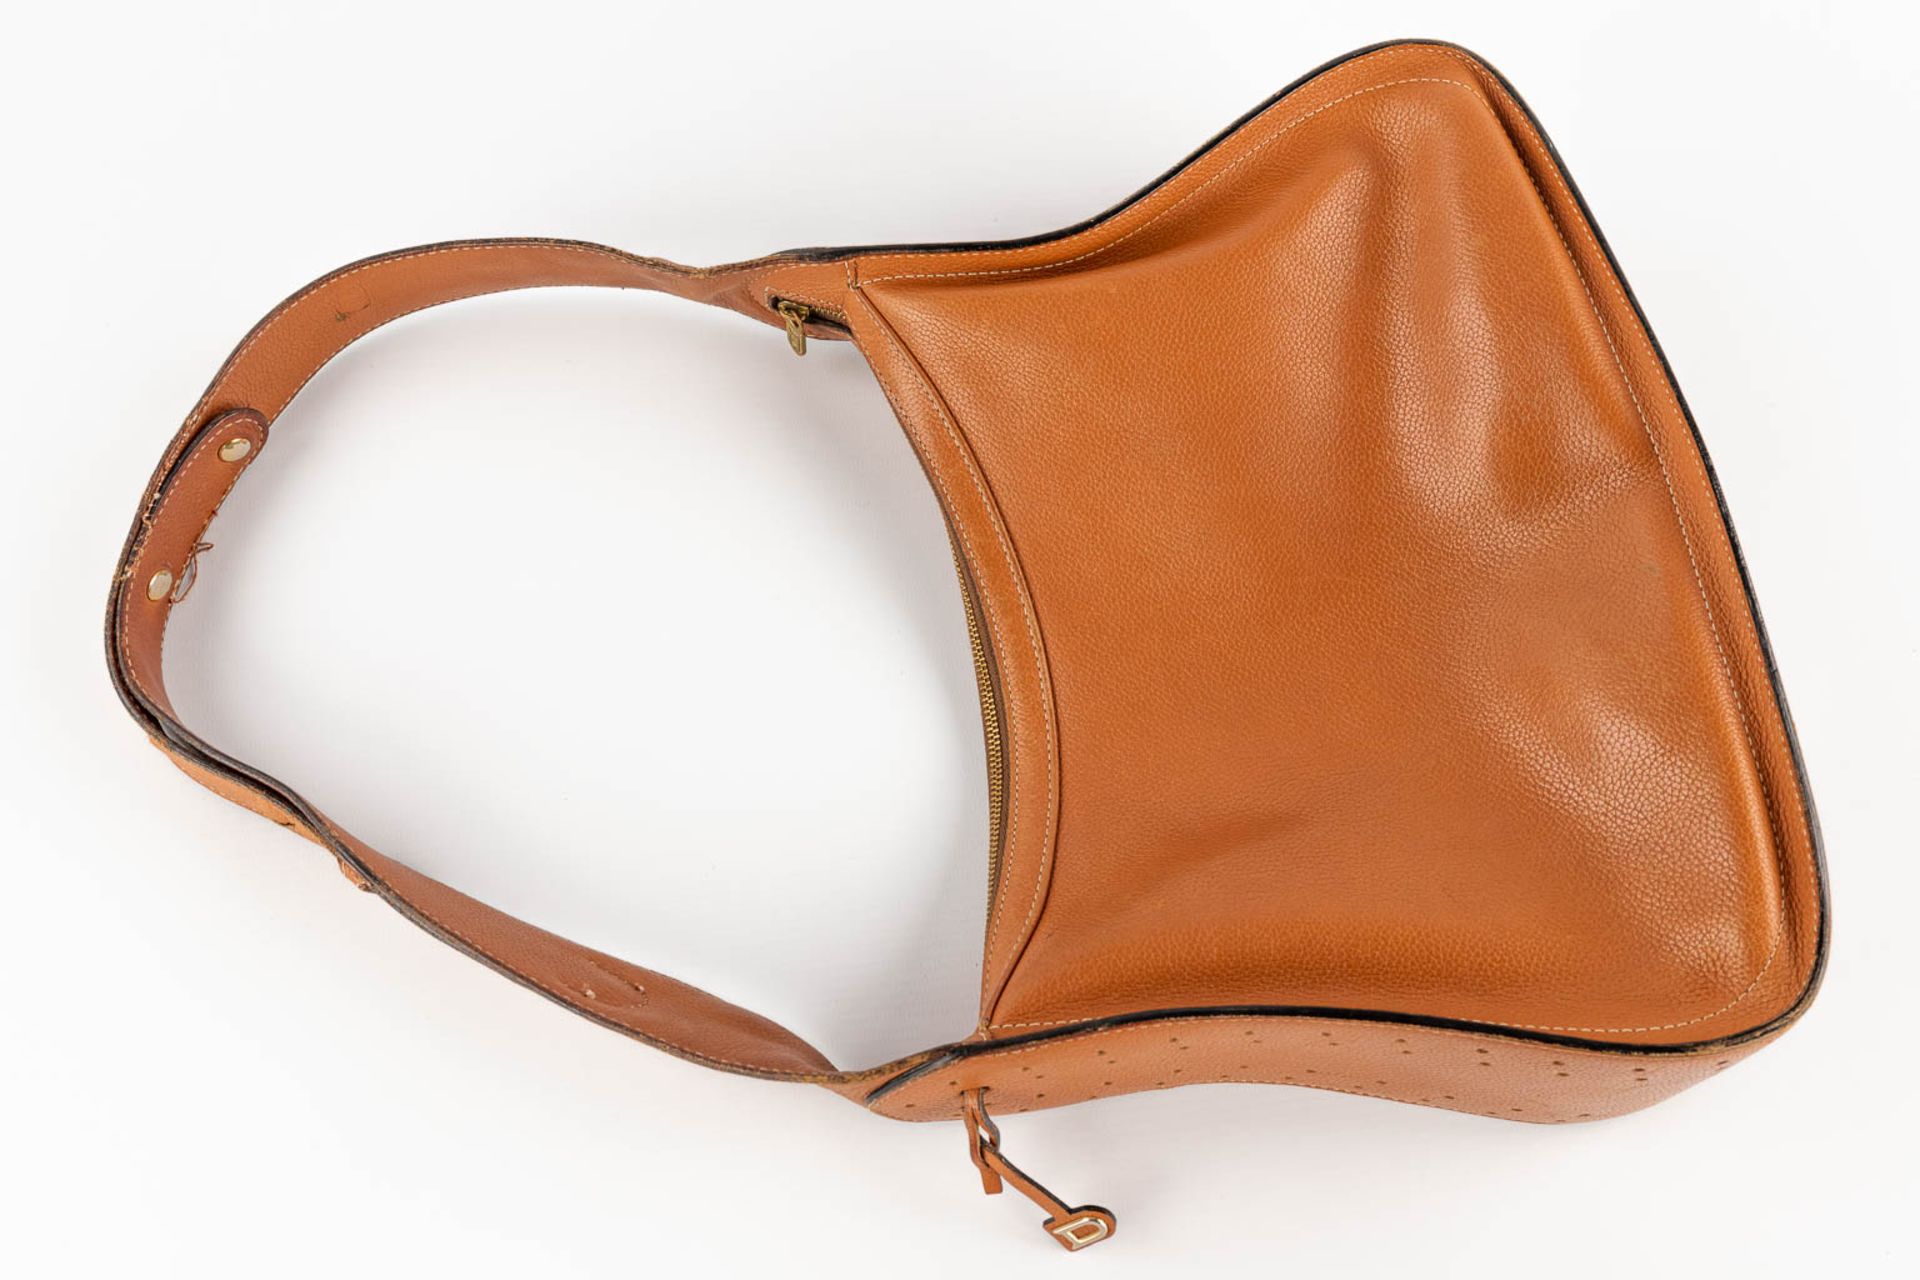 Delvaux, Pensée, a handbag made of brown leather. (W:24 x H:32 cm) - Bild 18 aus 18